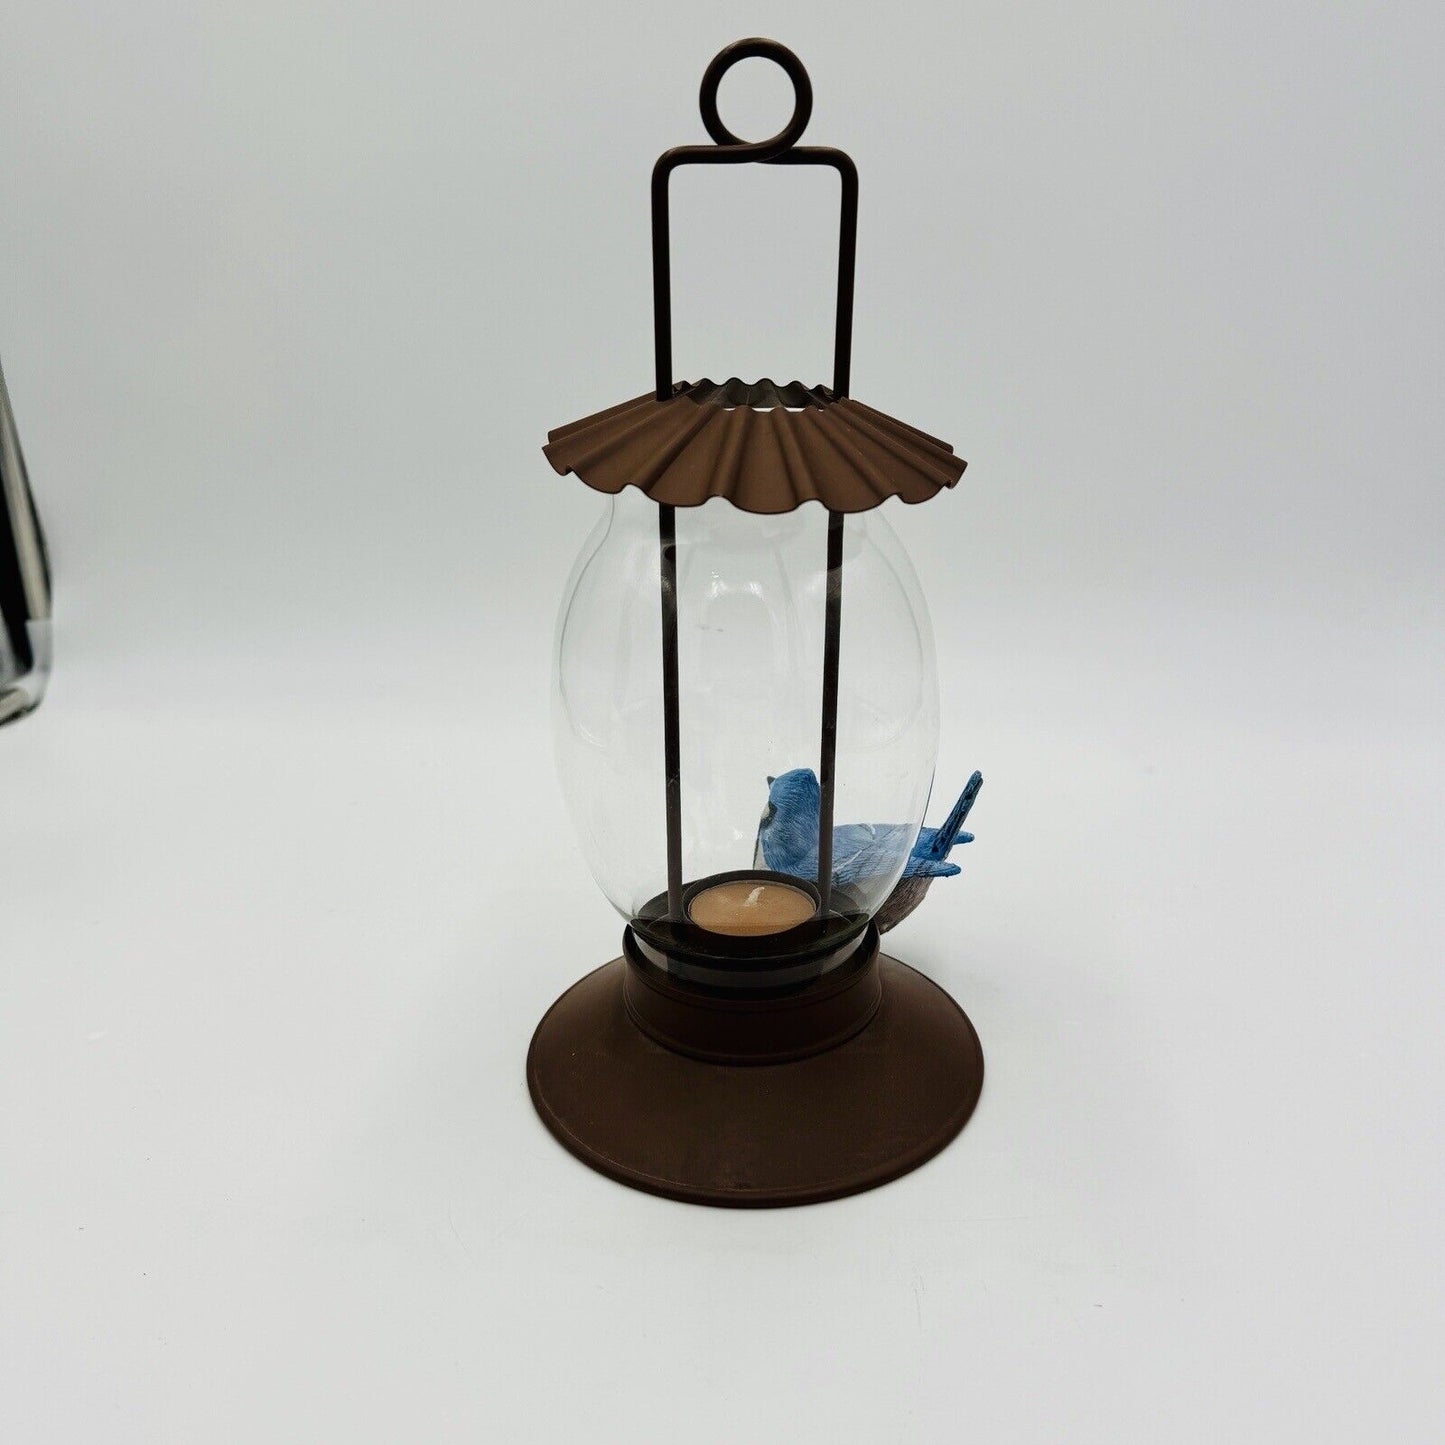 Hallmark Marjolein Bastin votive candle holder bird feeder lantern blue jay